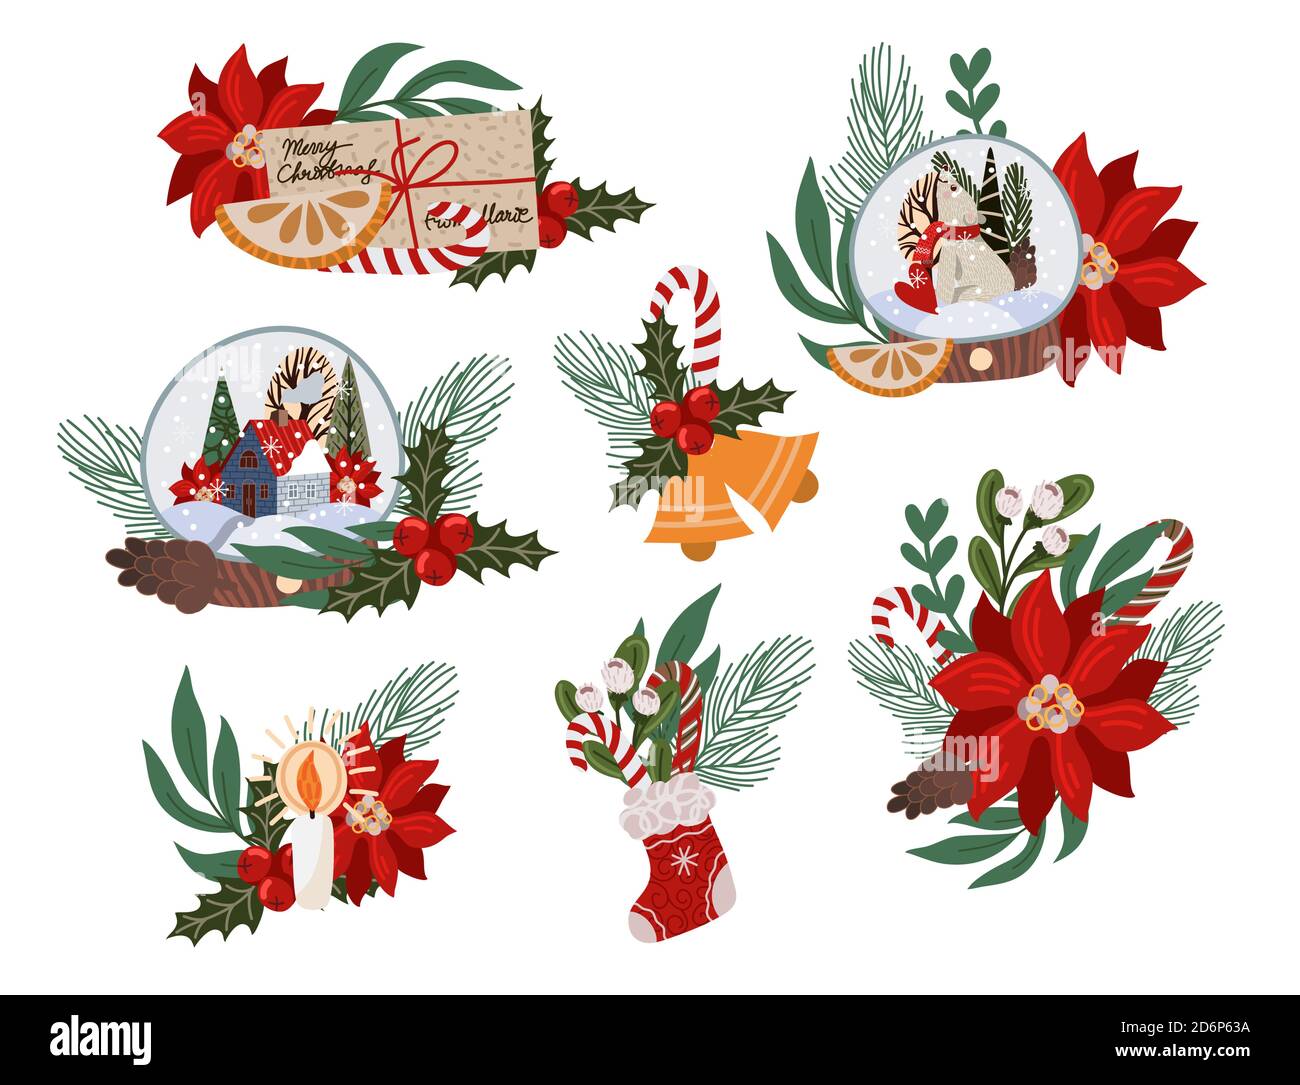 Weihnachtsdekor wie Tannenzweig, Glaskugel, Weihnachtsstern, Tannenzapfen und mehr. Vektorgrafik flach. Stock Vektor